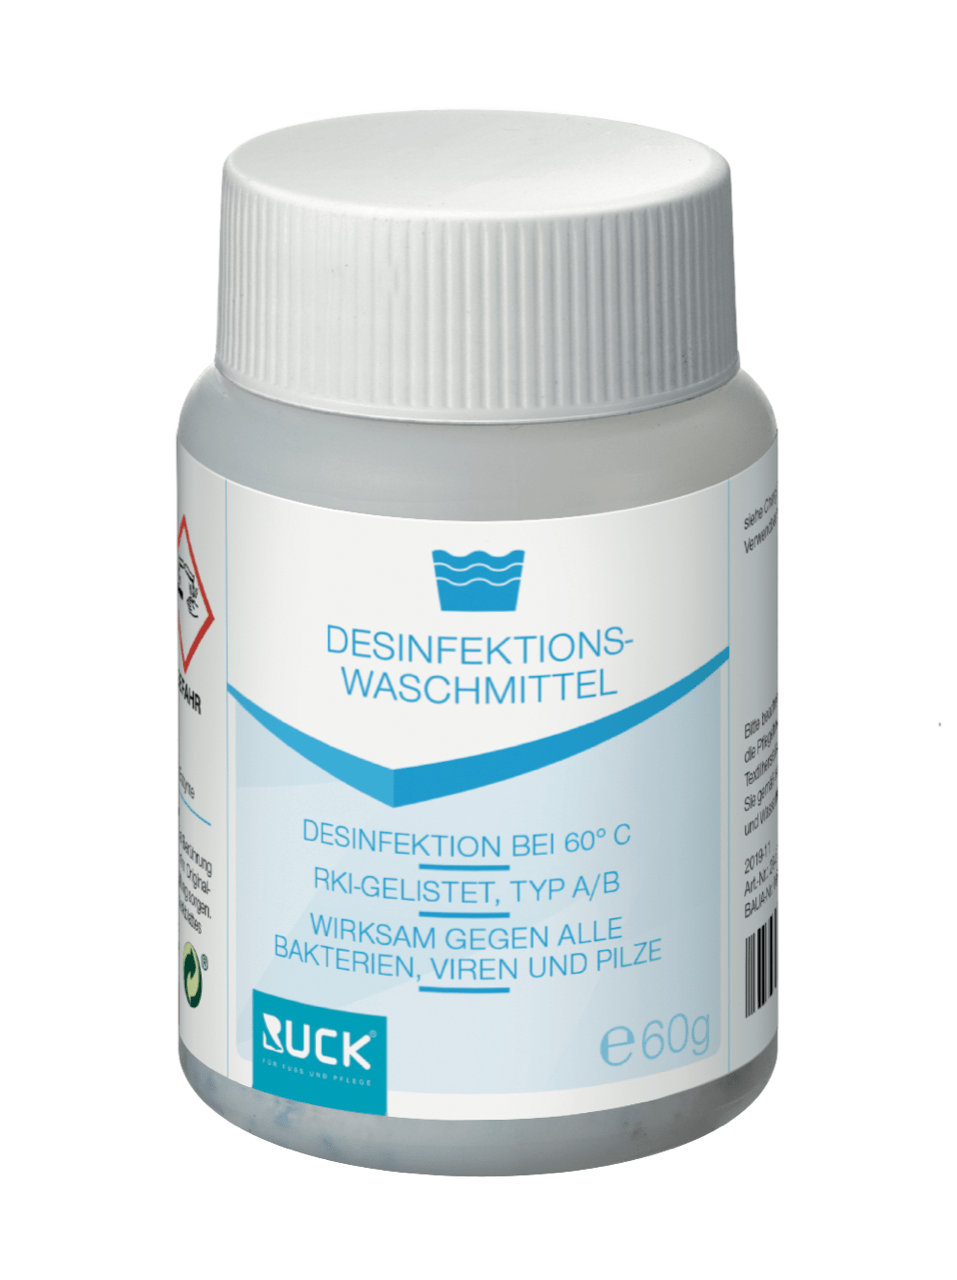 RUCK - Desinfektionswaschmittel, 60 g